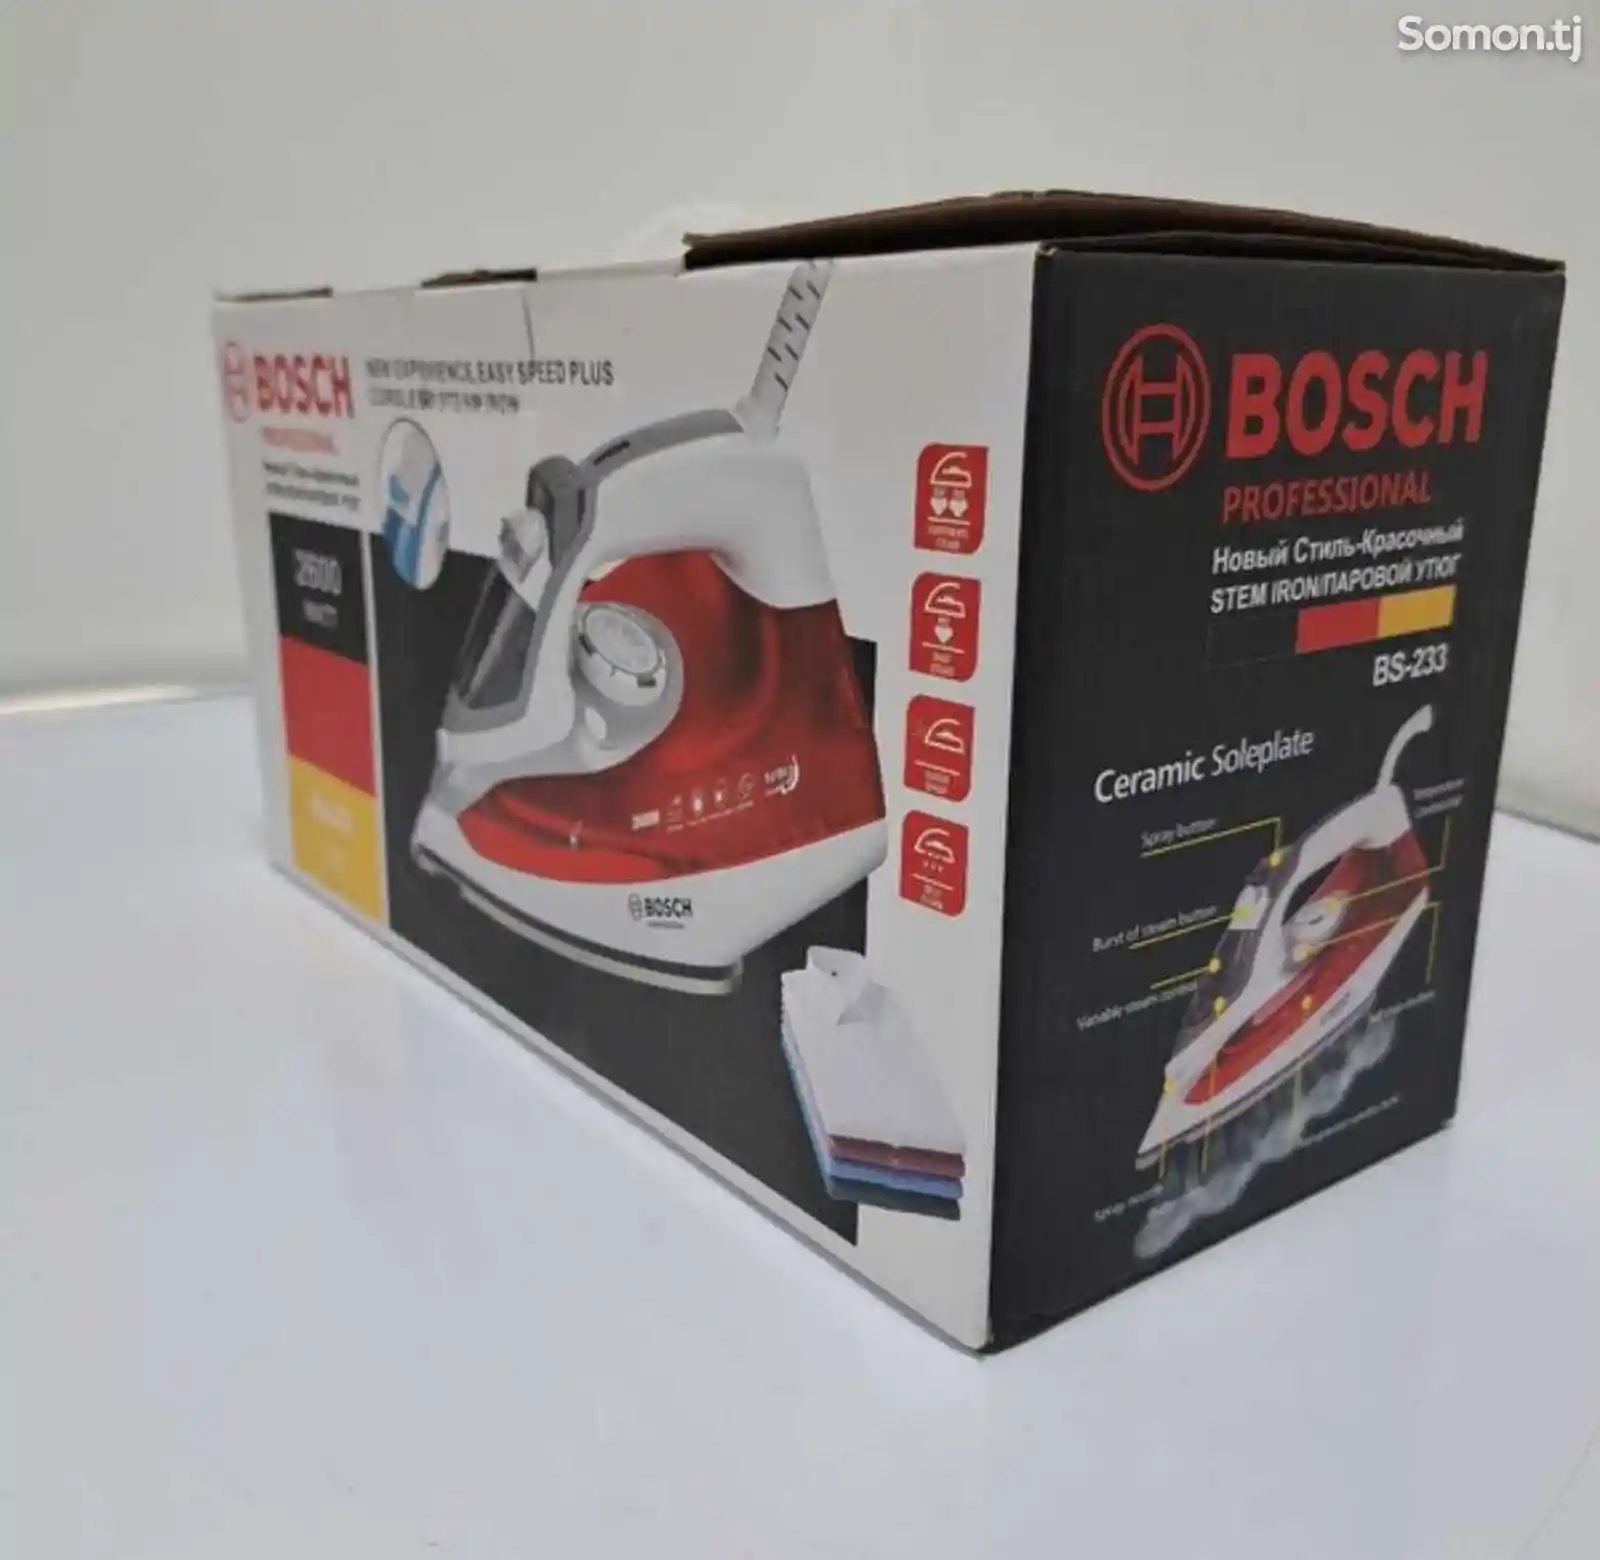 Утюг Bosch-1